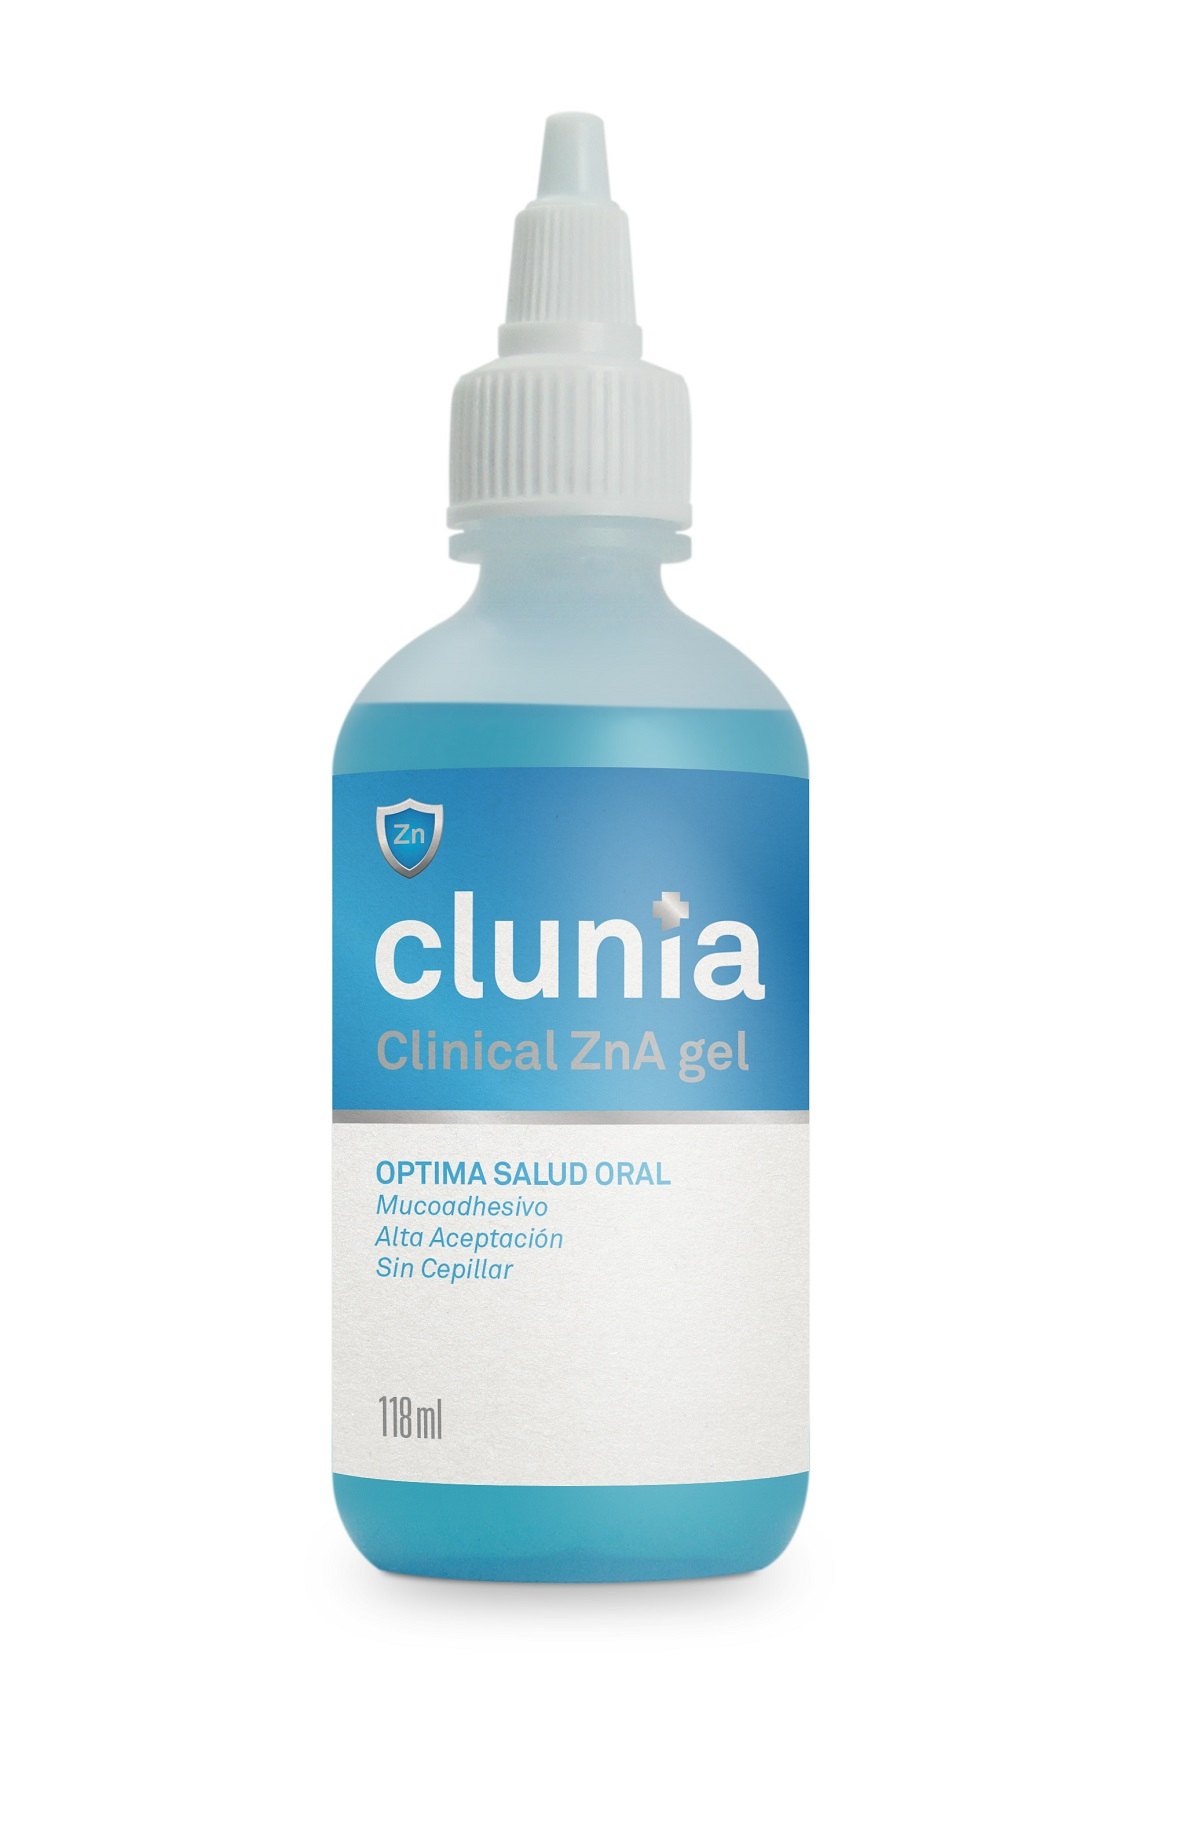 CLUNIA Zn-A Clinical Gel para perros, gatos, caballos y otros animales